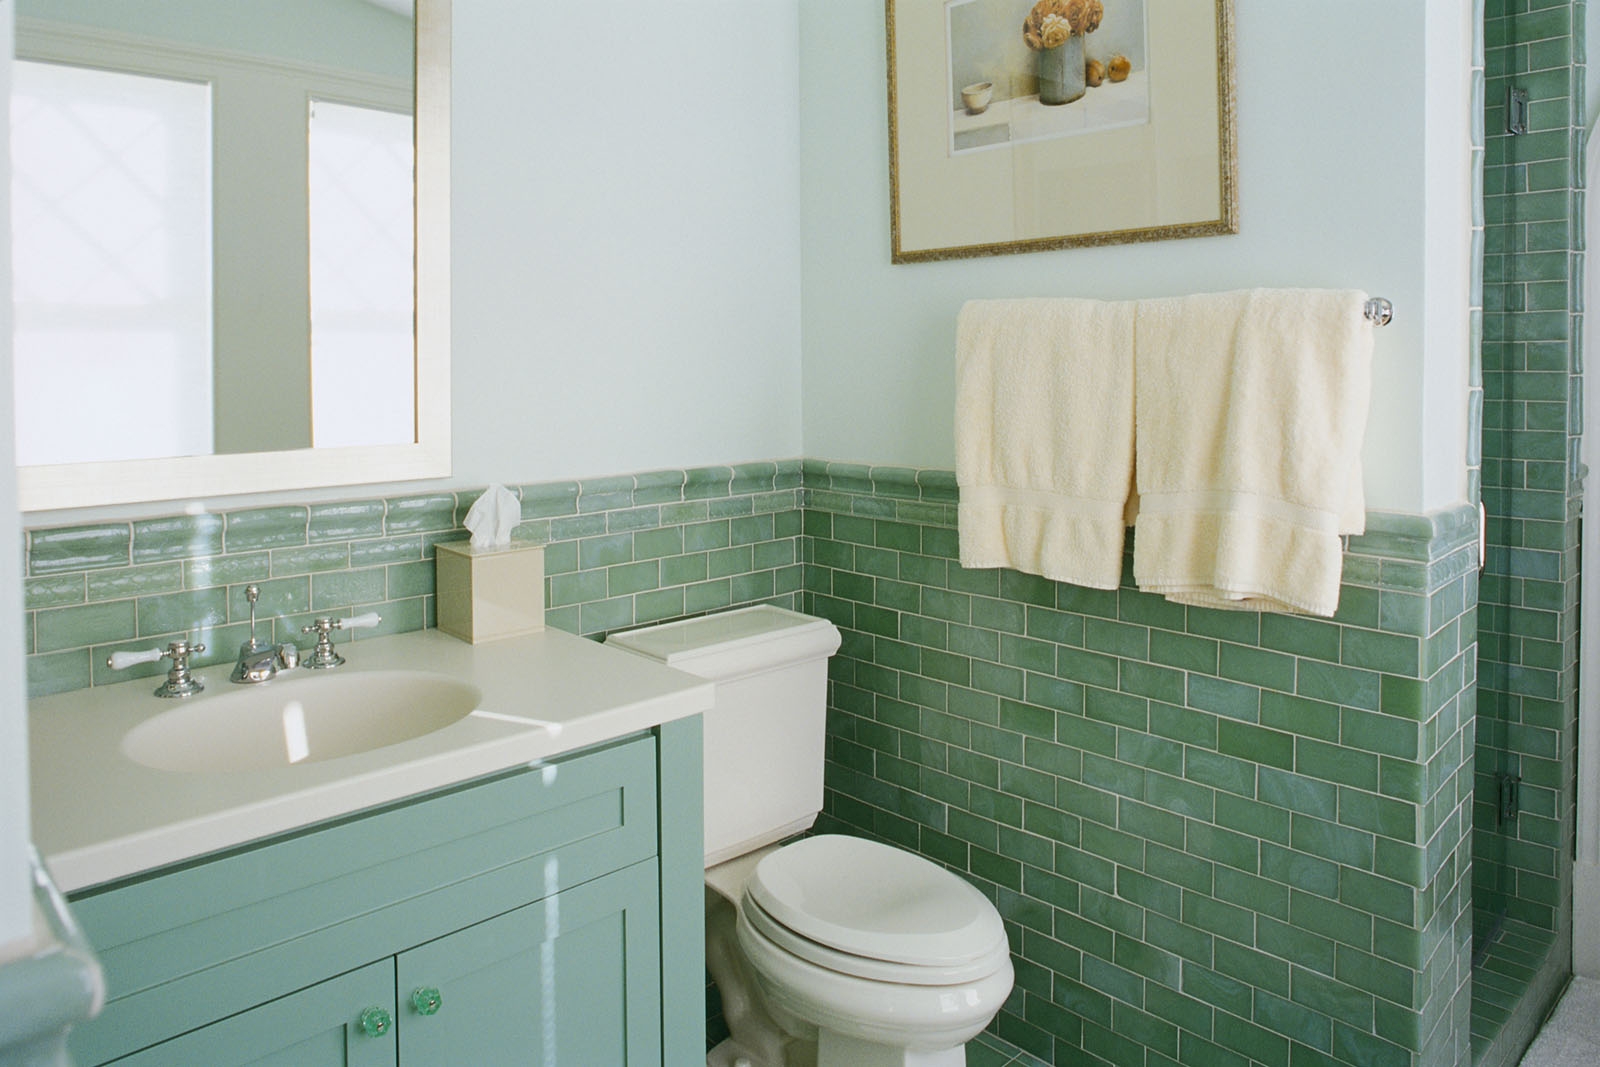 Для маленьких ванних кімнат ідеально підійде поєднання світлого зеленого - зазвичай це м'ятний колір - з іншими пастельними відтінками